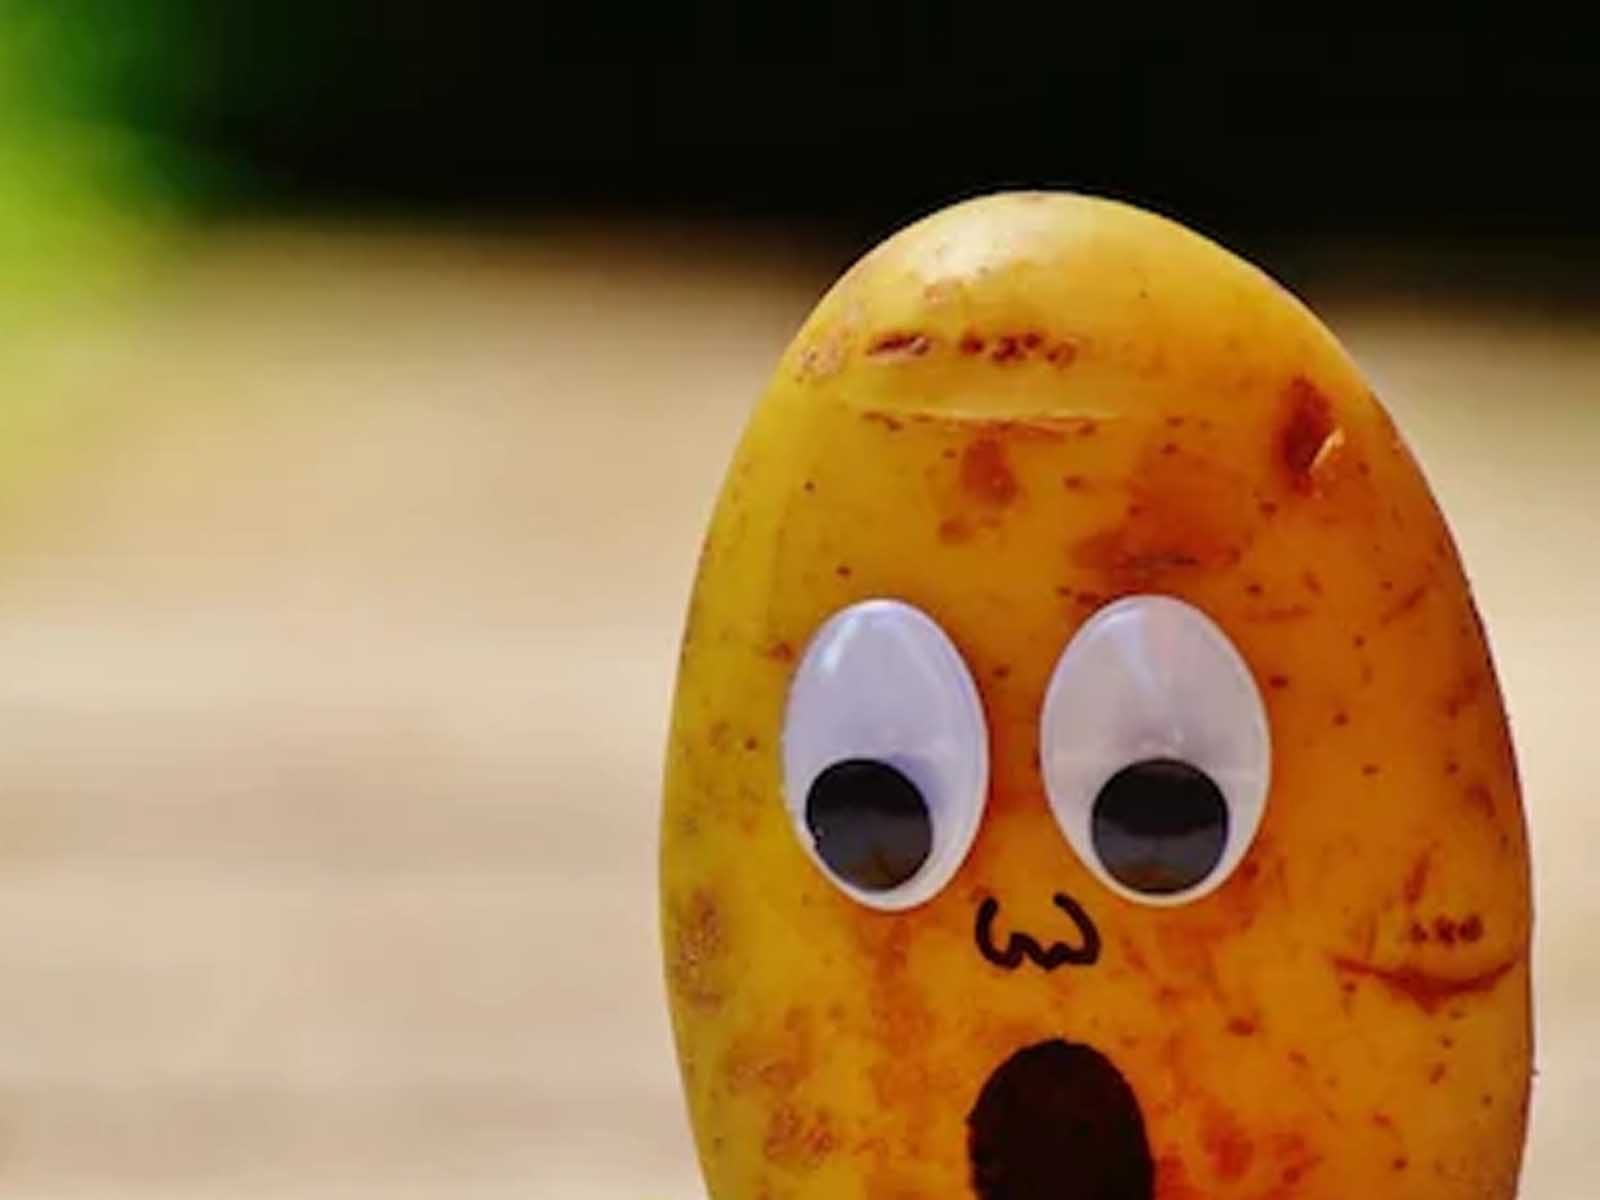 Potatoes in High Cholesterol: ਹਾਈ ਕੋਲੇਸਟ੍ਰੋਲ ਵਾਲੇ ਲੋਕ ਖਾ ਸਕਦੇ ਹਨ ਆਲੂ? ਜਾਣੋ ਸੇਵਨ ਦਾ ਸਹੀ ਤਰੀਕਾ